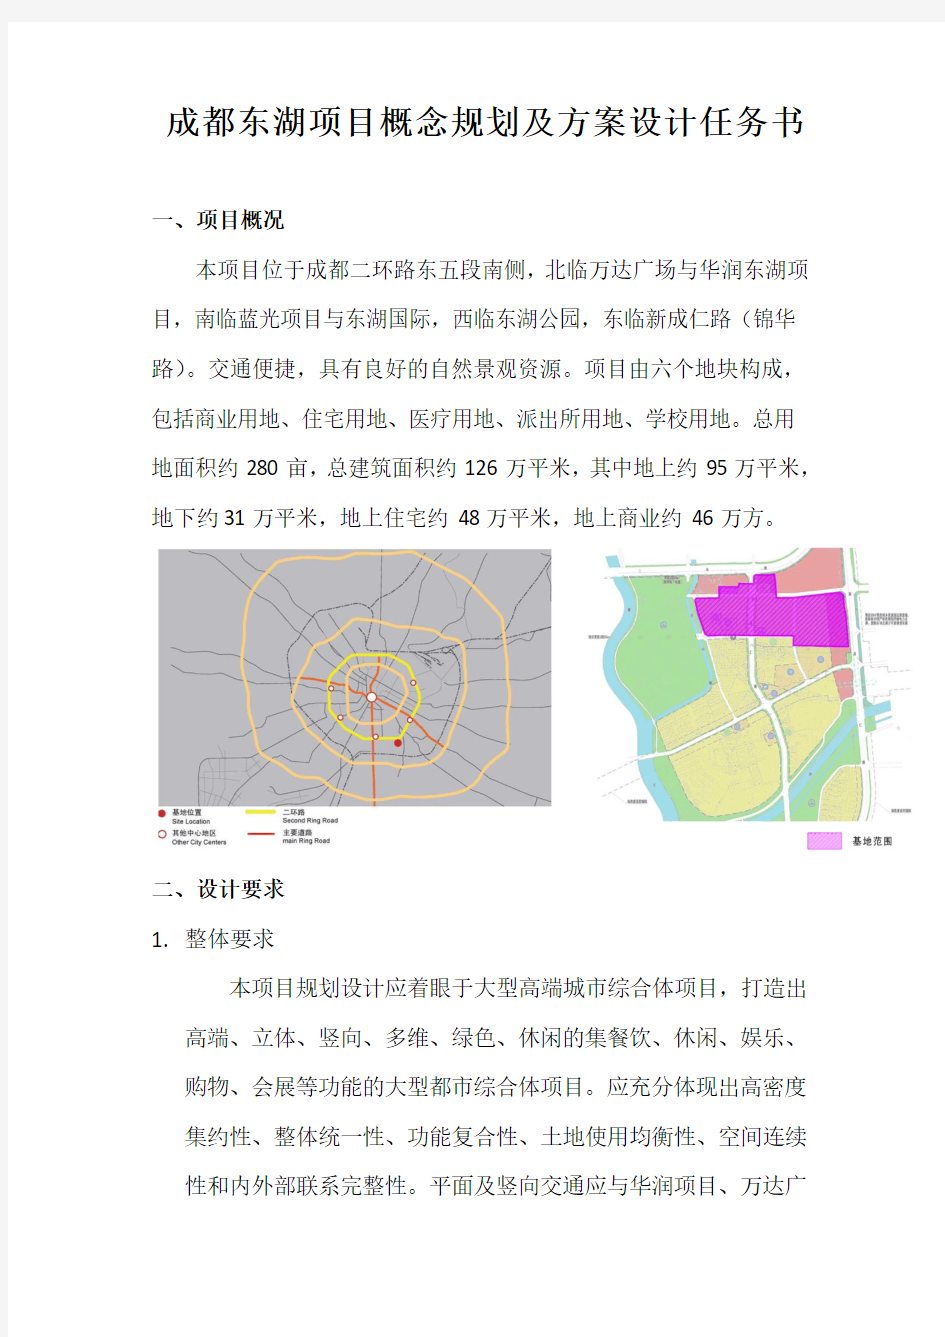 成都东湖项目概念规划及方案设计任务书